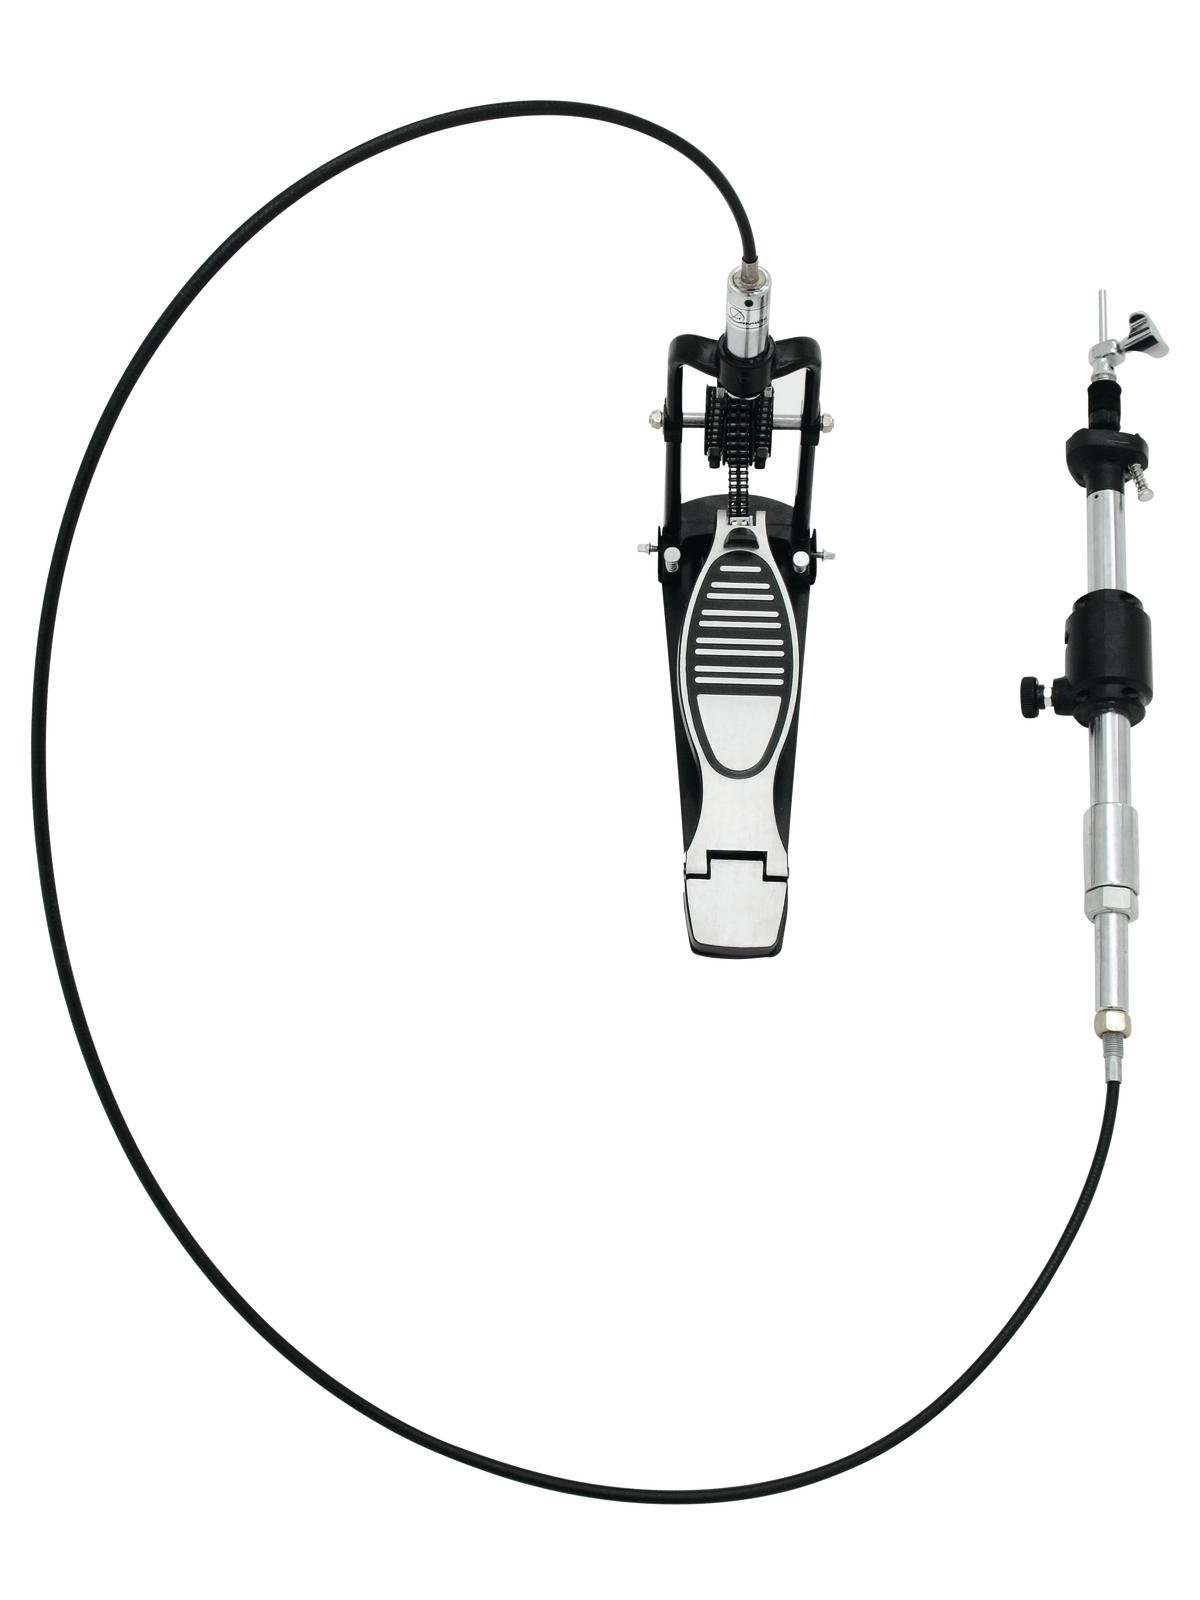 Dimavery HHS-600, šlapka pro ovládání Hi-hat činelů pomocí kabelu